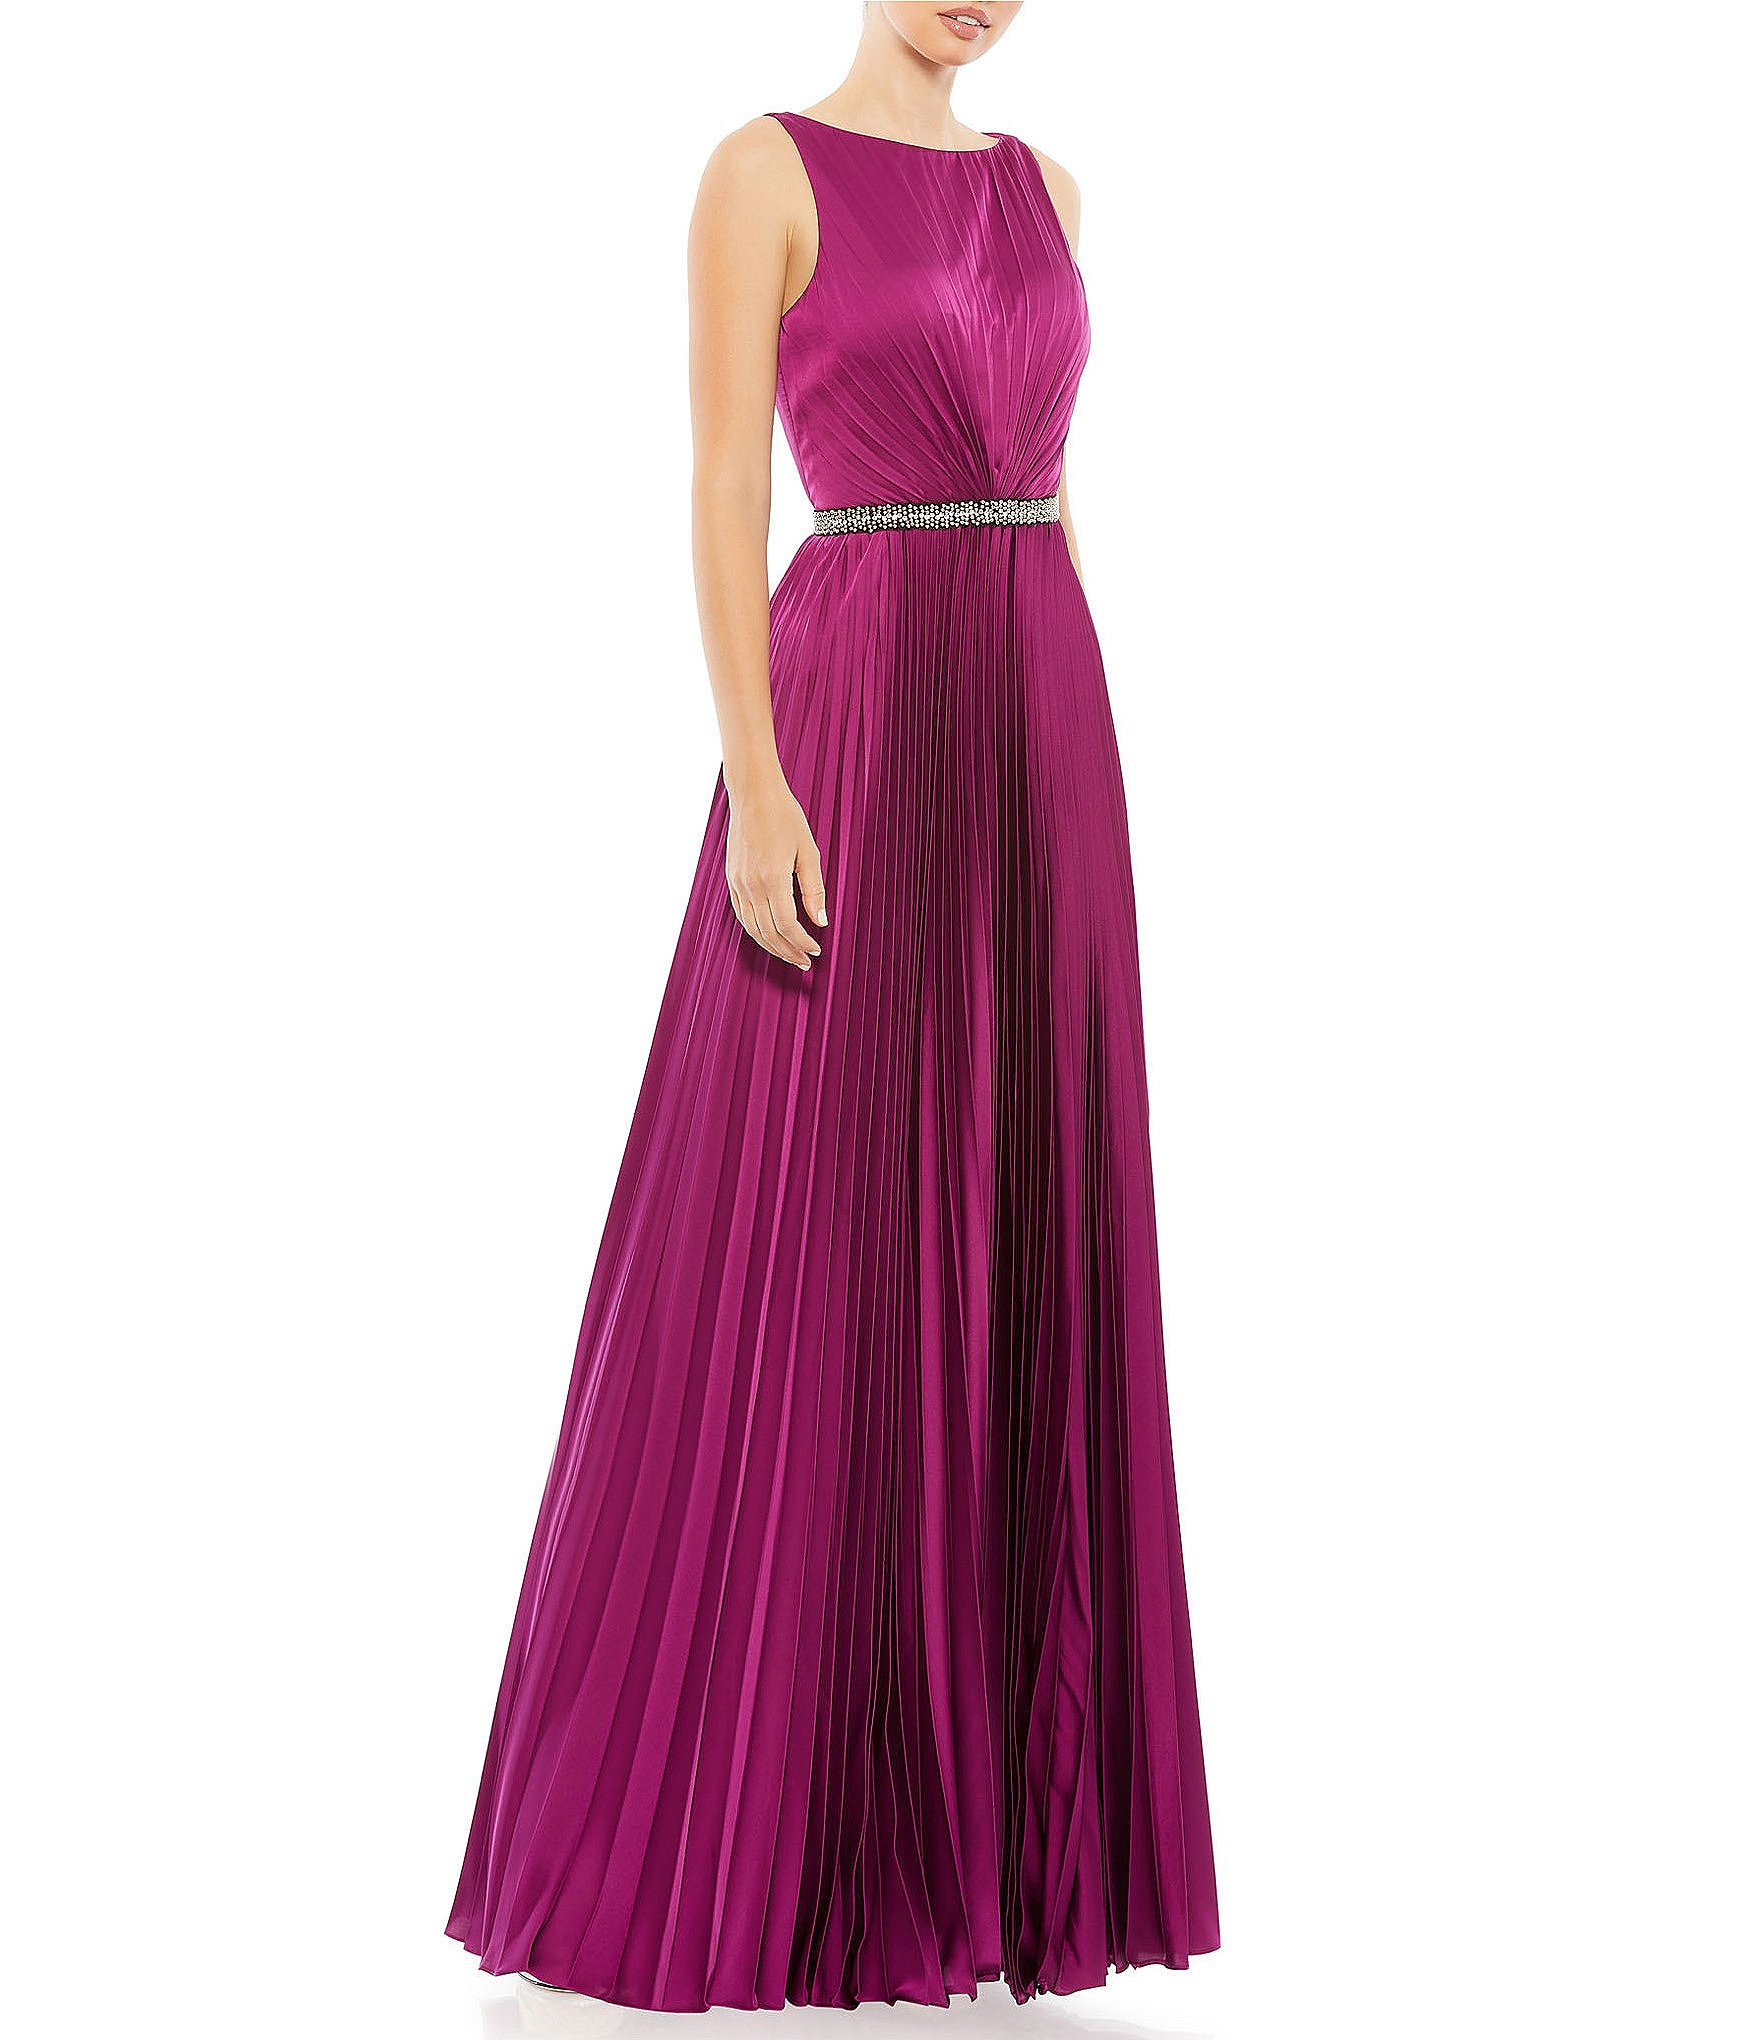 clearance evening dresses: Women's Formal Dresses & Evening Gowns |  Dillard's